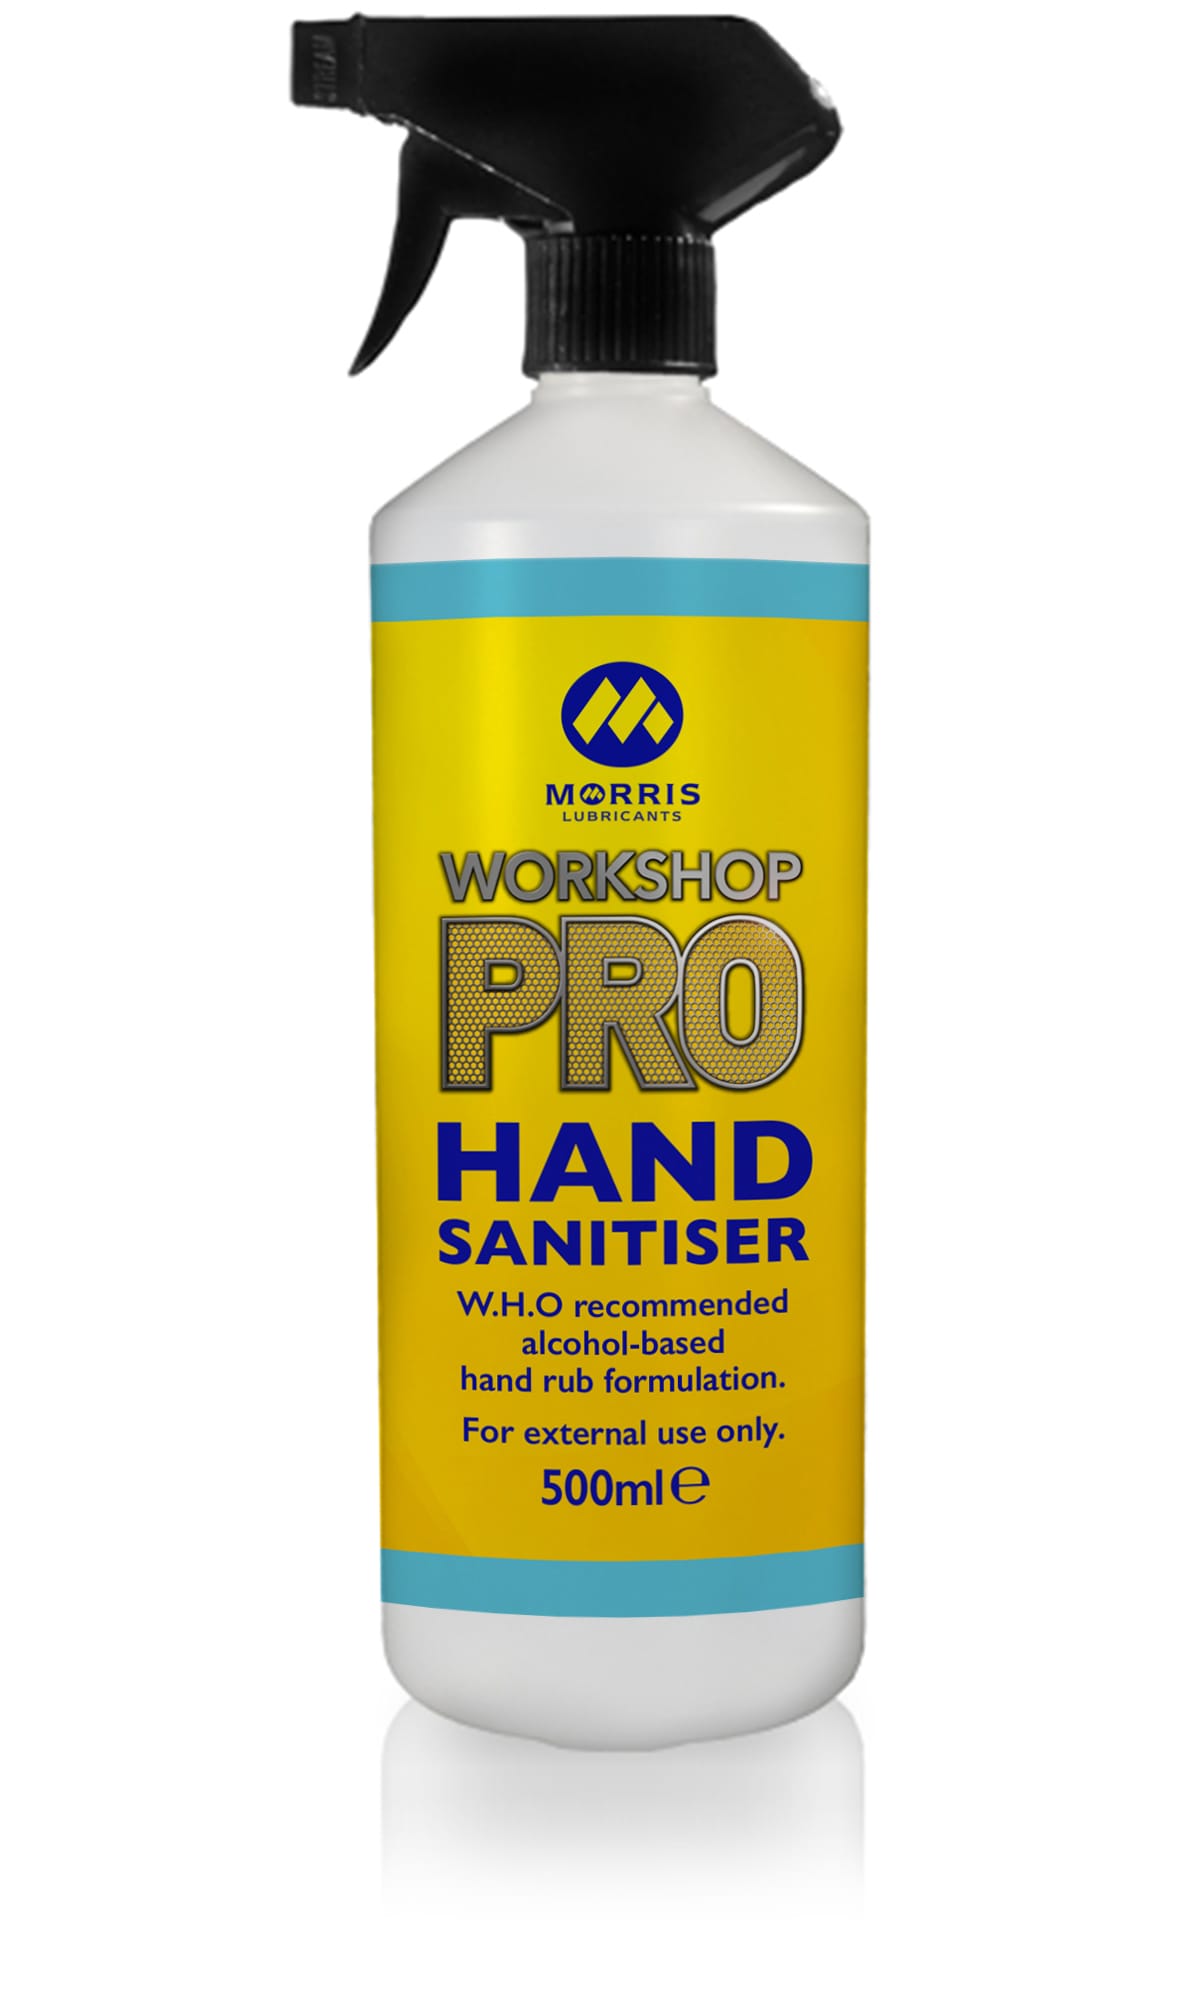 Workshop Pro Hand Sanitiser